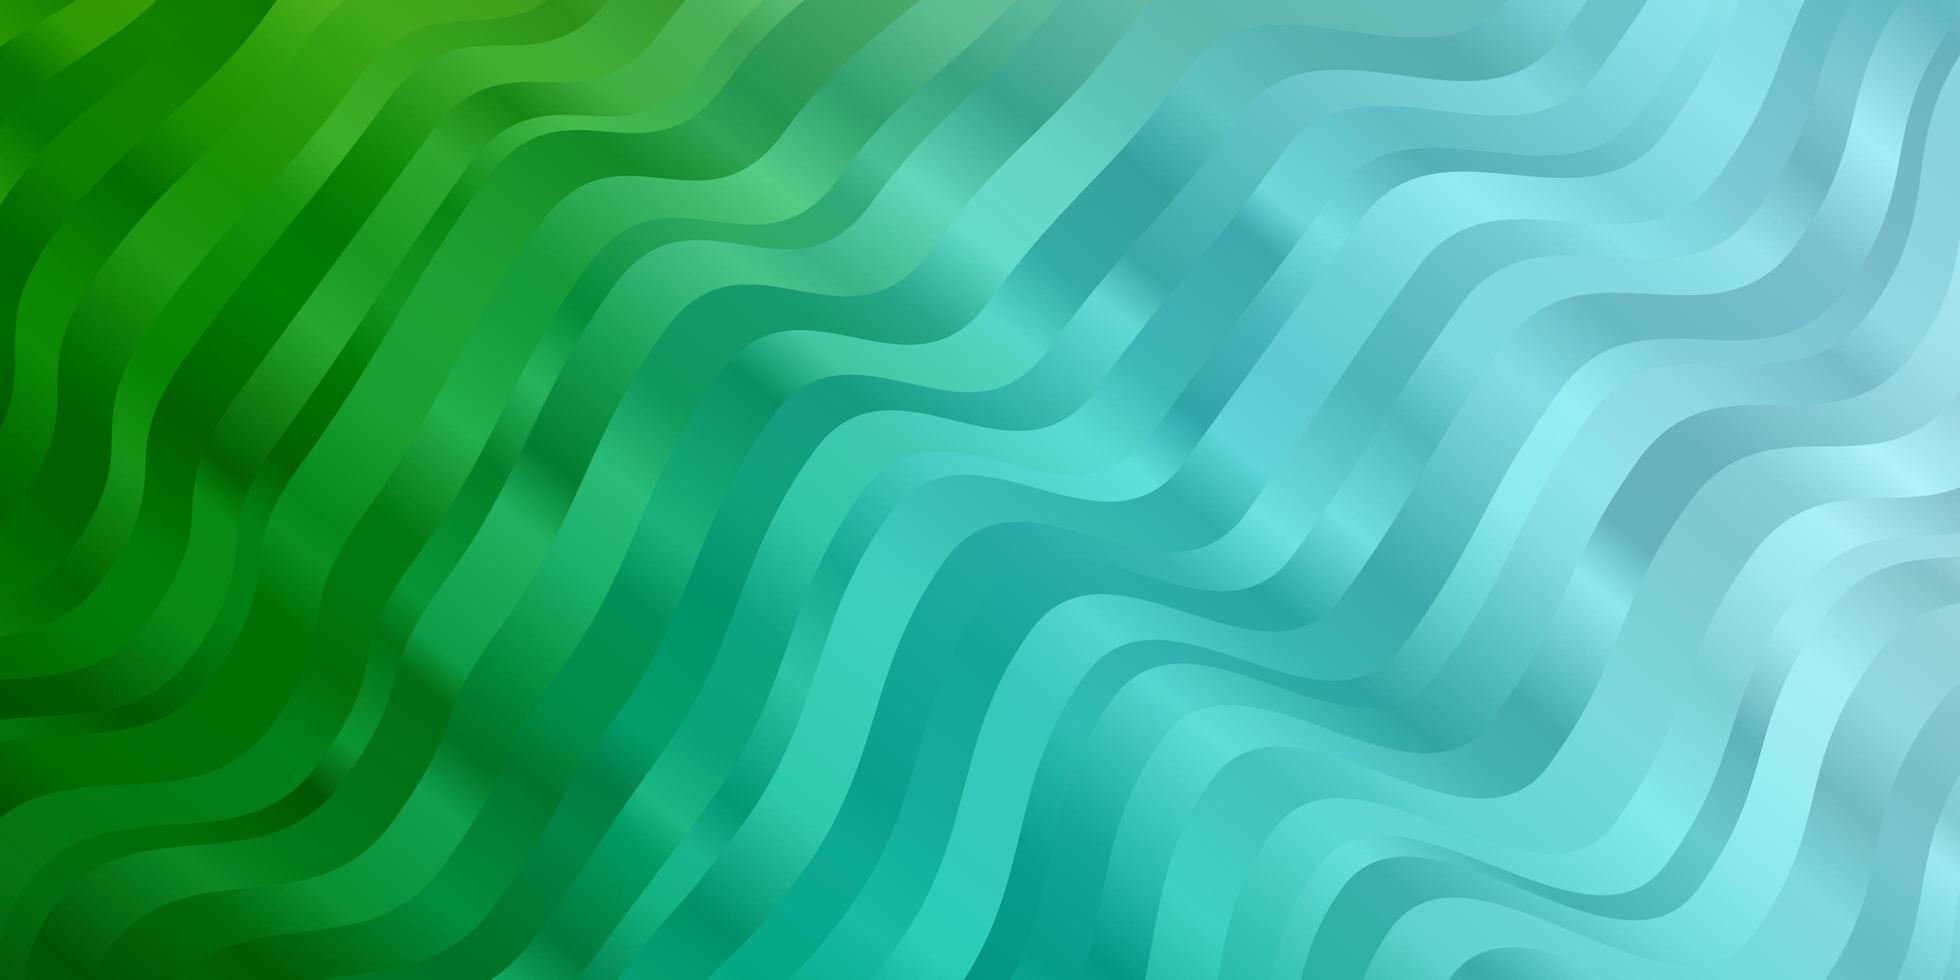 texture vecteur vert bleu clair avec des courbes illustration colorée avec des lignes courbes meilleure conception pour votre bannière d'affiche publicitaire